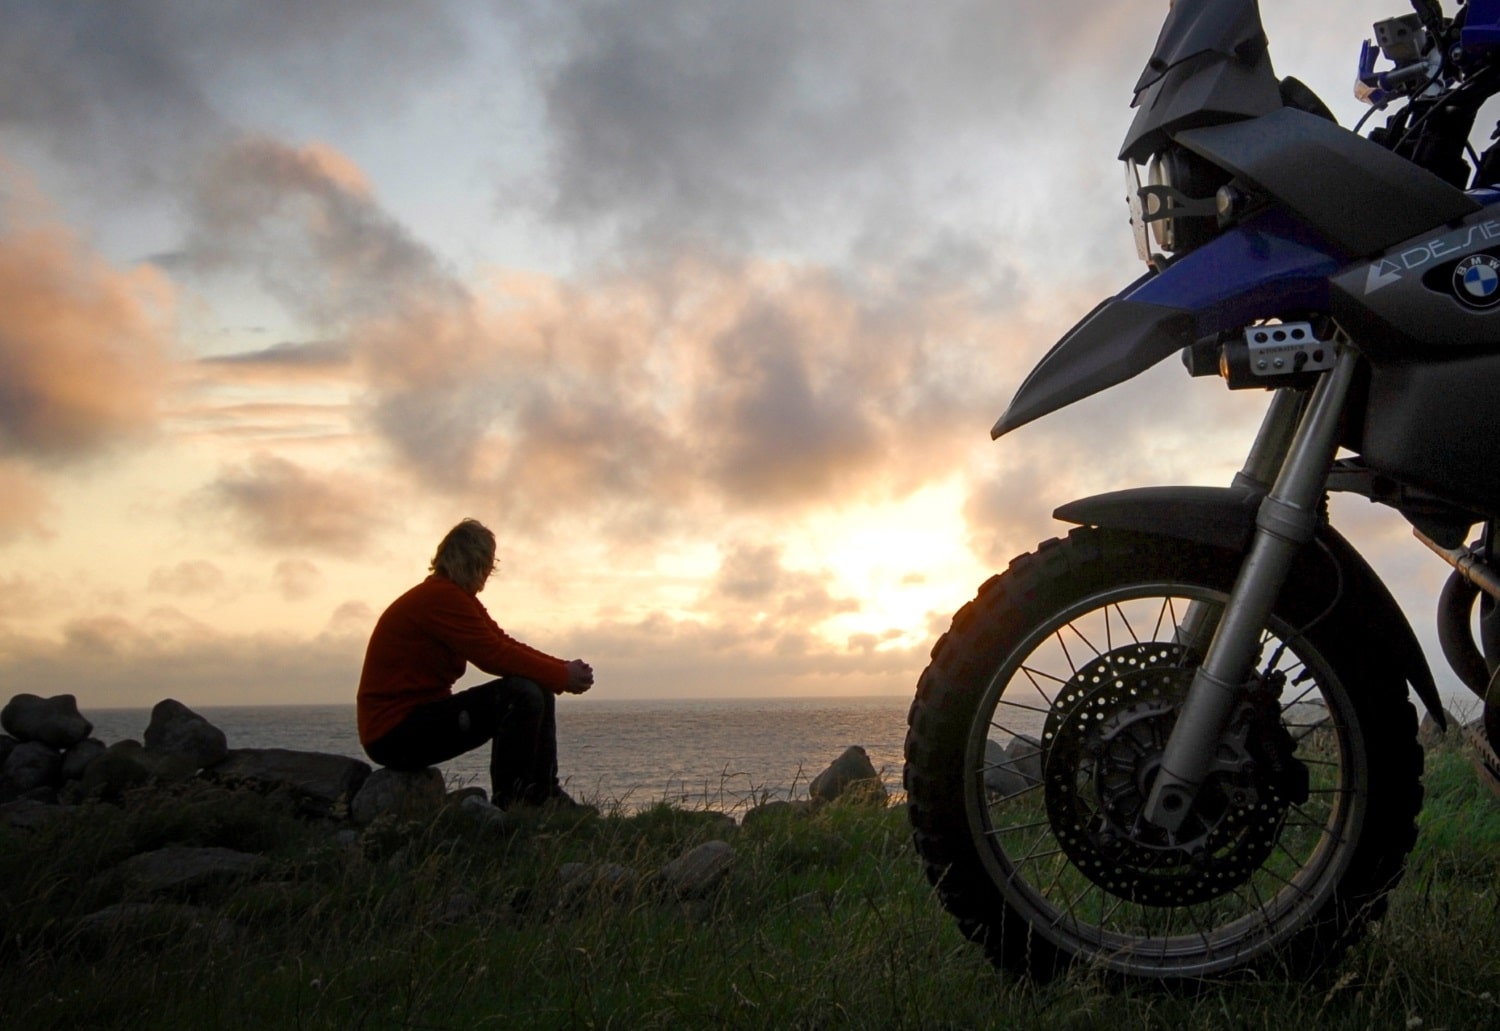 Moto-pneumatici.it chiama a raccolta i motociclisti per la terza “Biker Summer 2015” 7